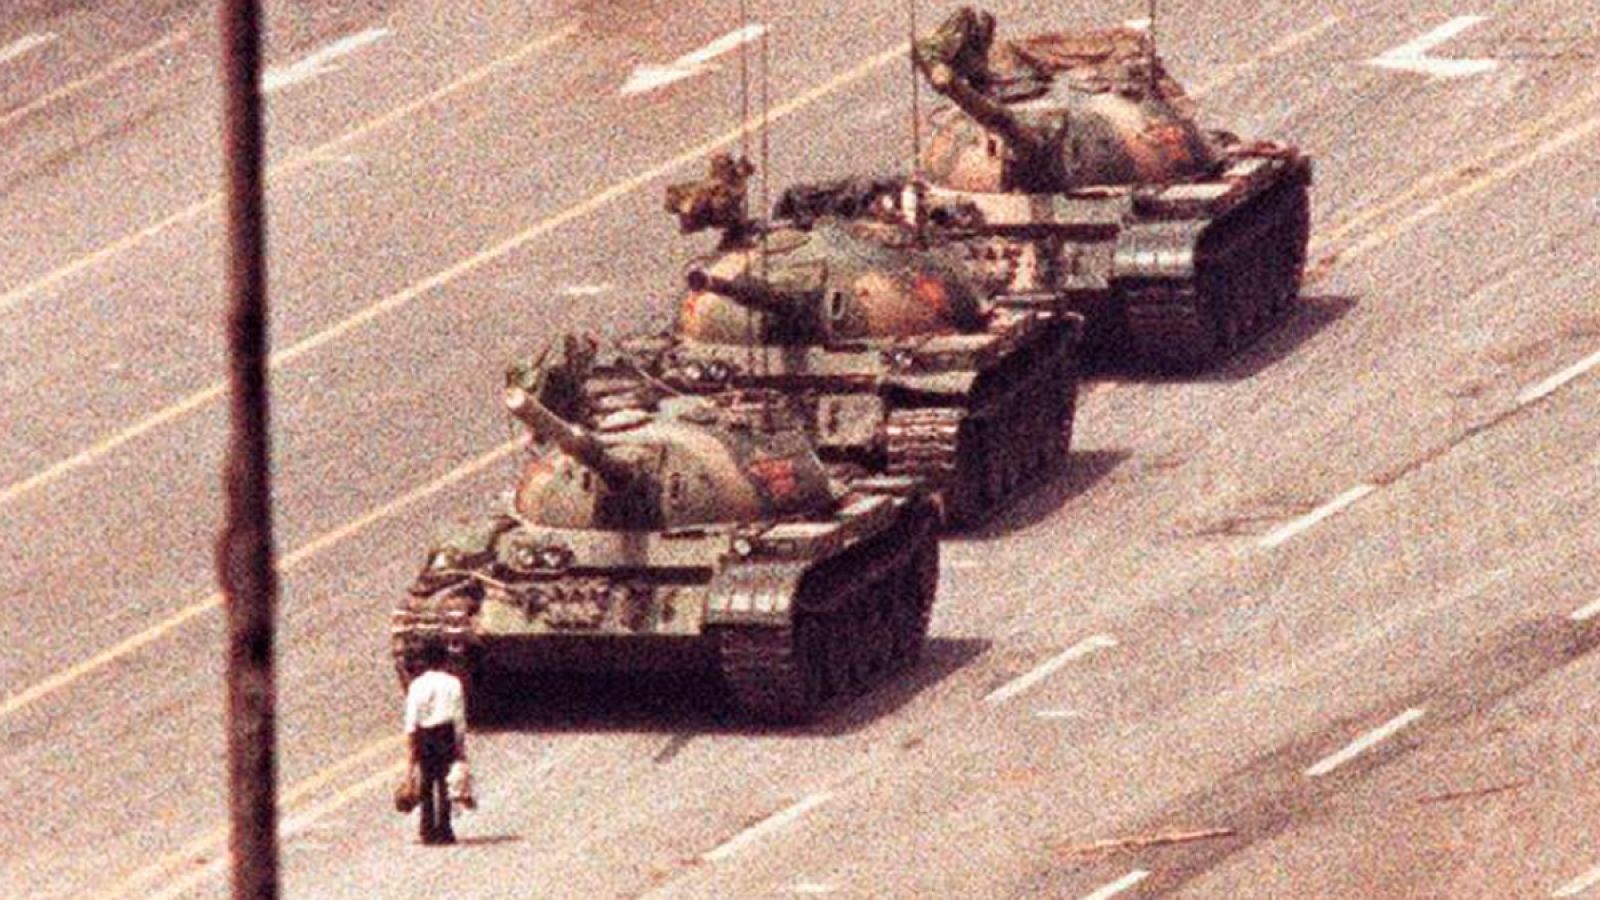 China: La masacre de Tiananmen, una matanza silenciada en China 30 años después - RTVE.es